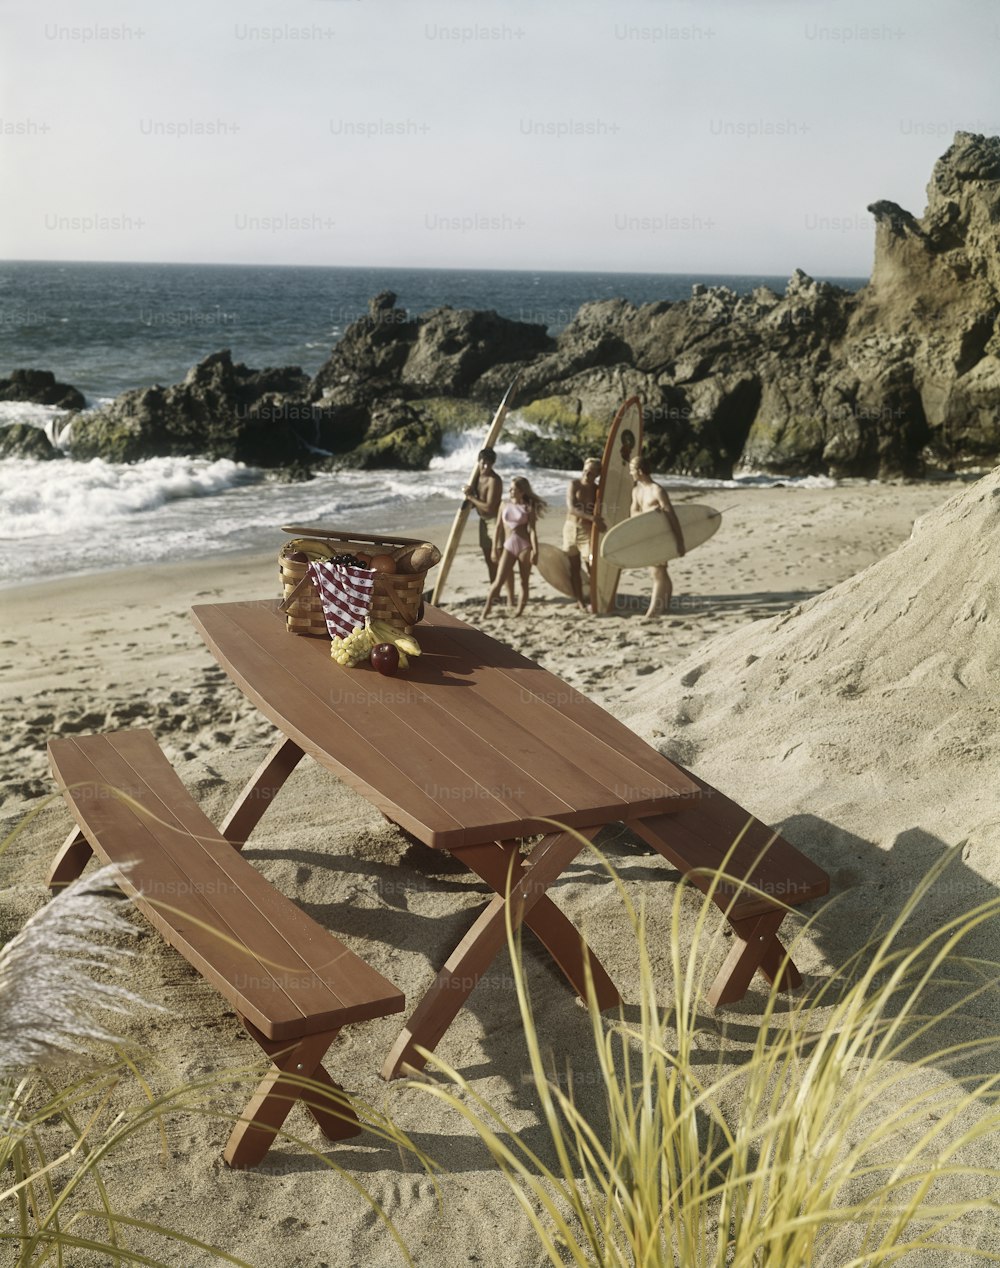 Ein hölzerner Picknicktisch an einem Strand mit Menschen im Hintergrund